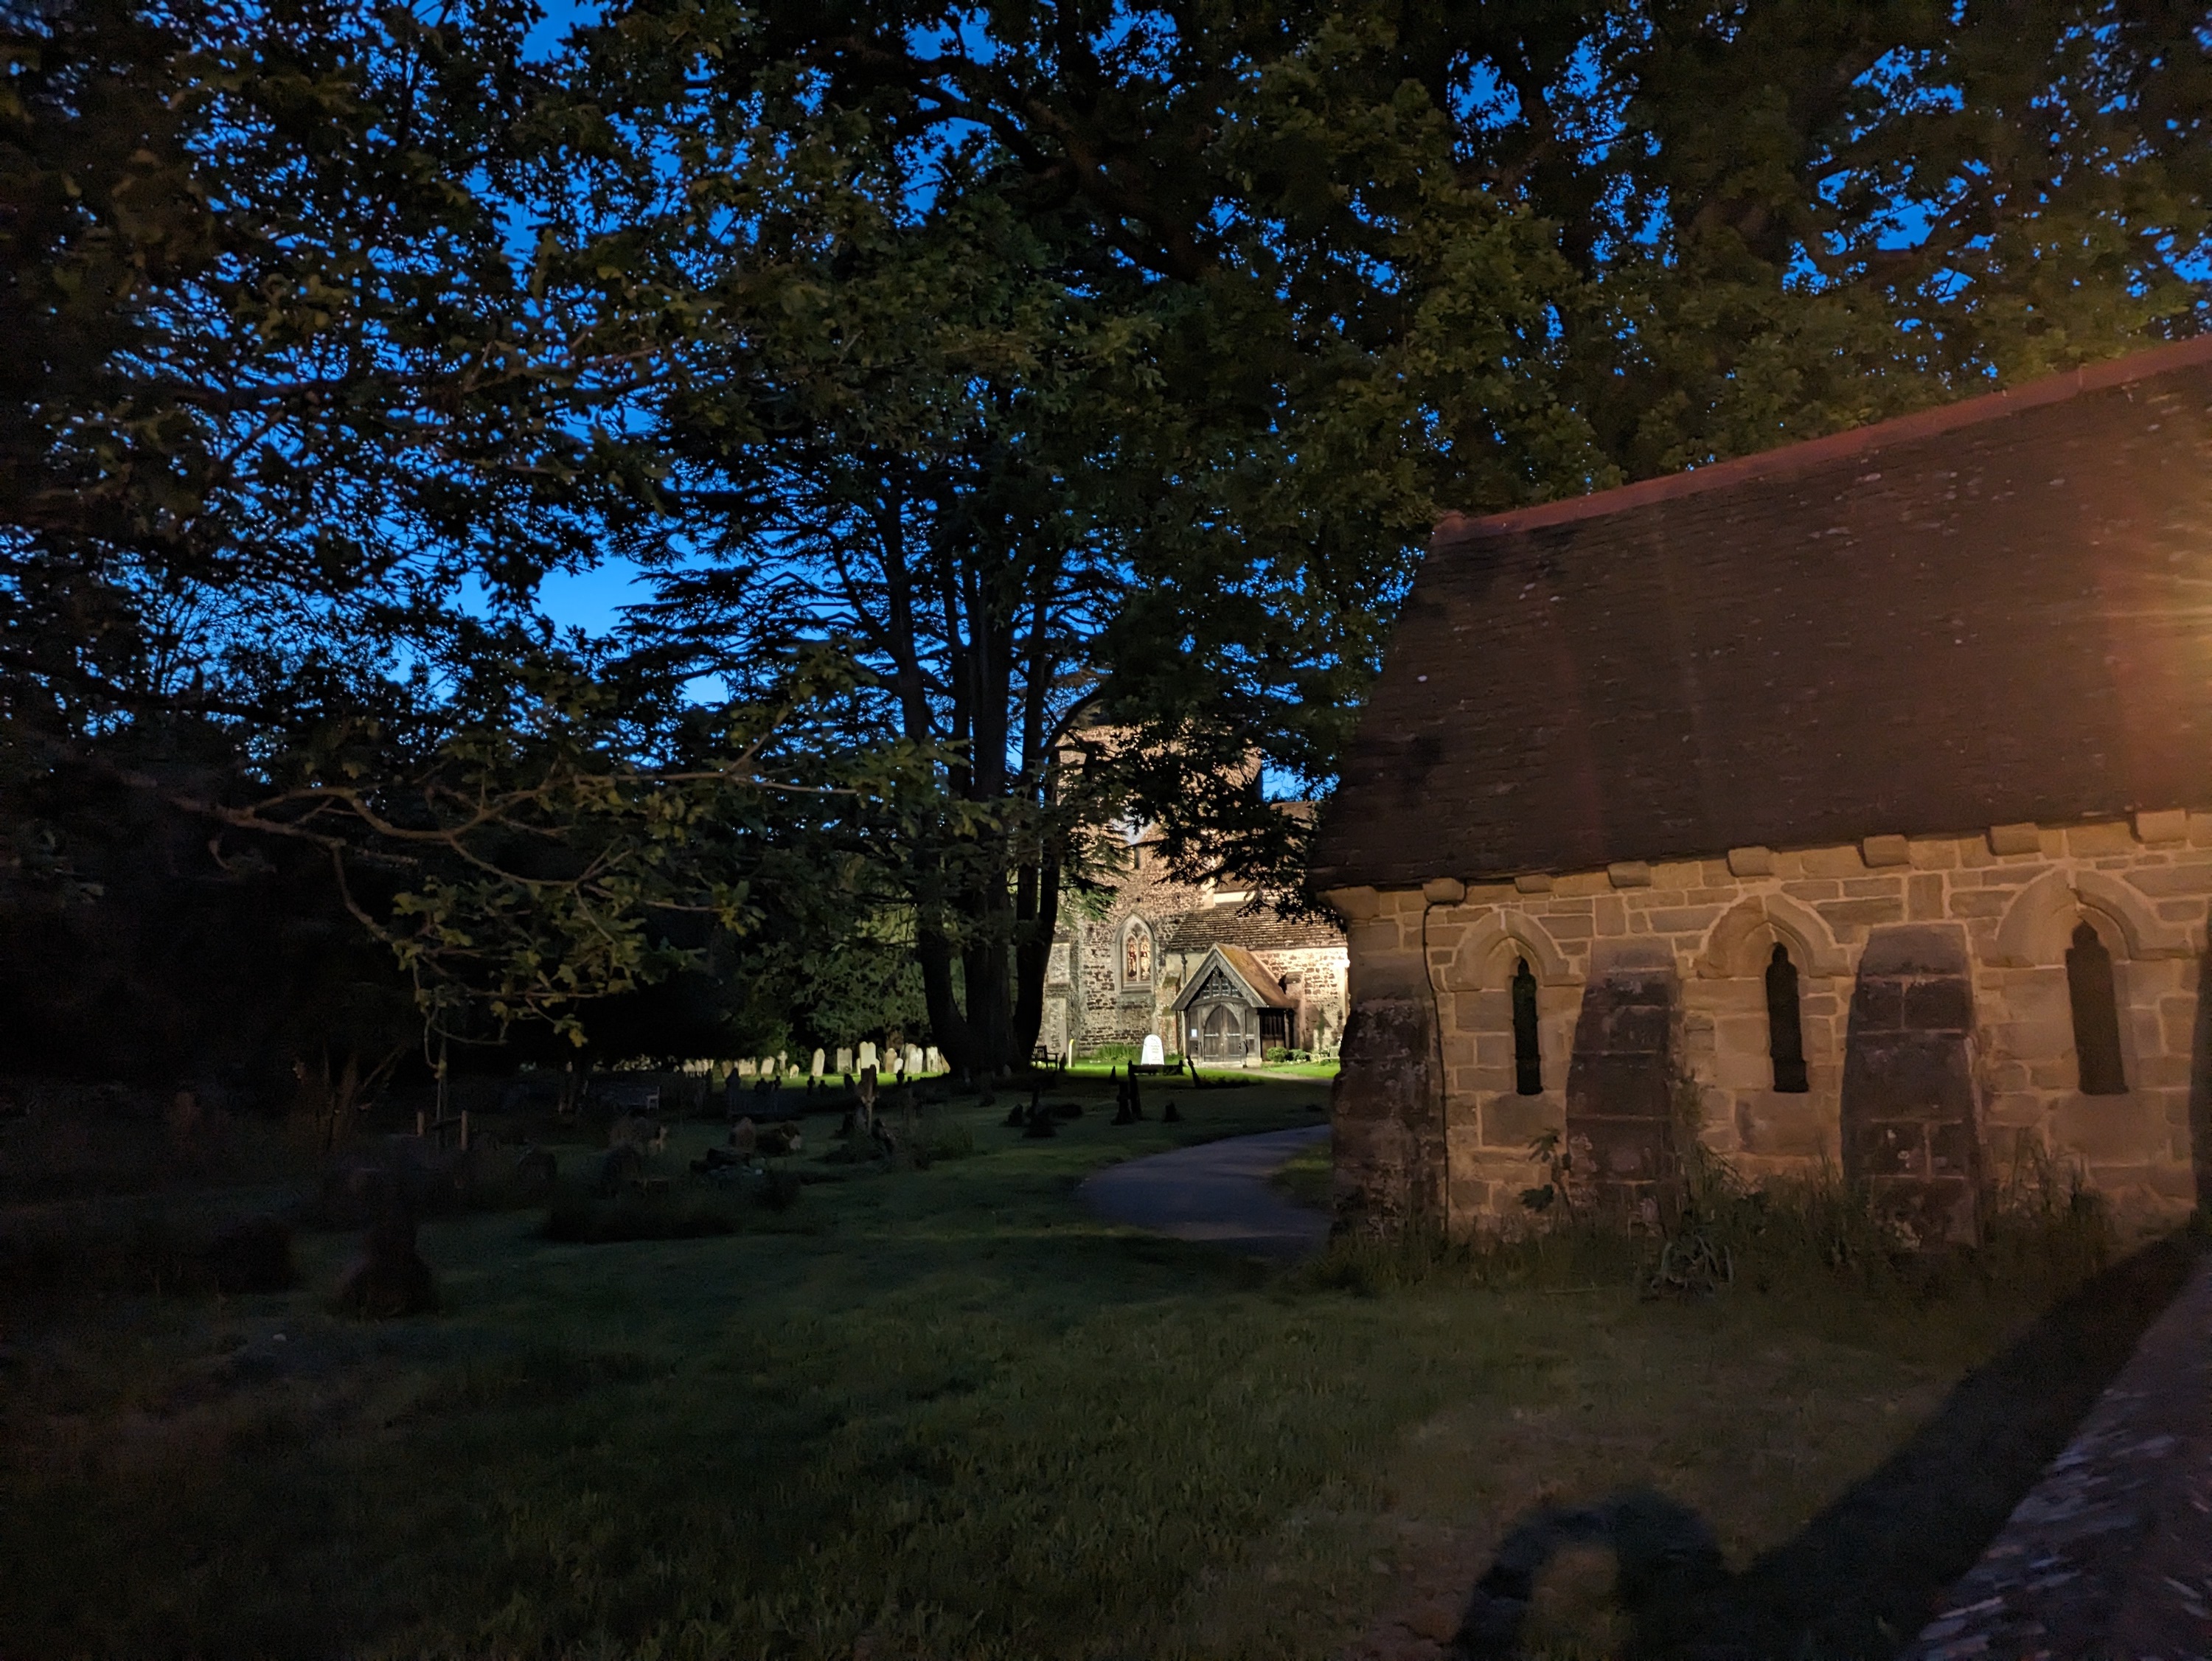 عکس گرفته شده با دوربین اصلی Pixel 7a در حالت شب.